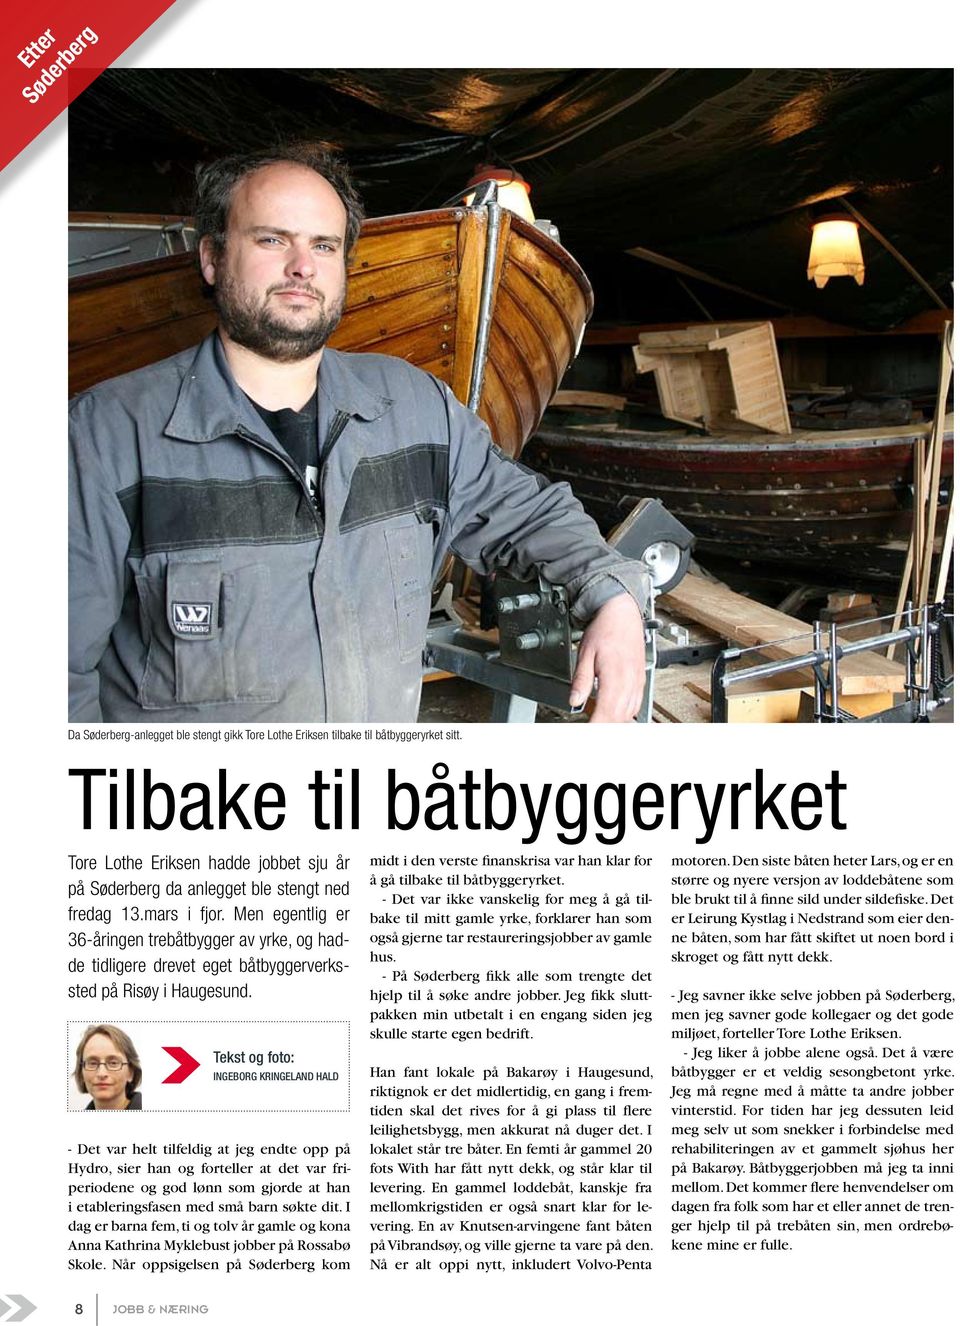 Men egentlig er 36-åringen trebåtbygger av yrke, og hadde tidligere drevet eget båtbyggerverkssted på Risøy i Haugesund.